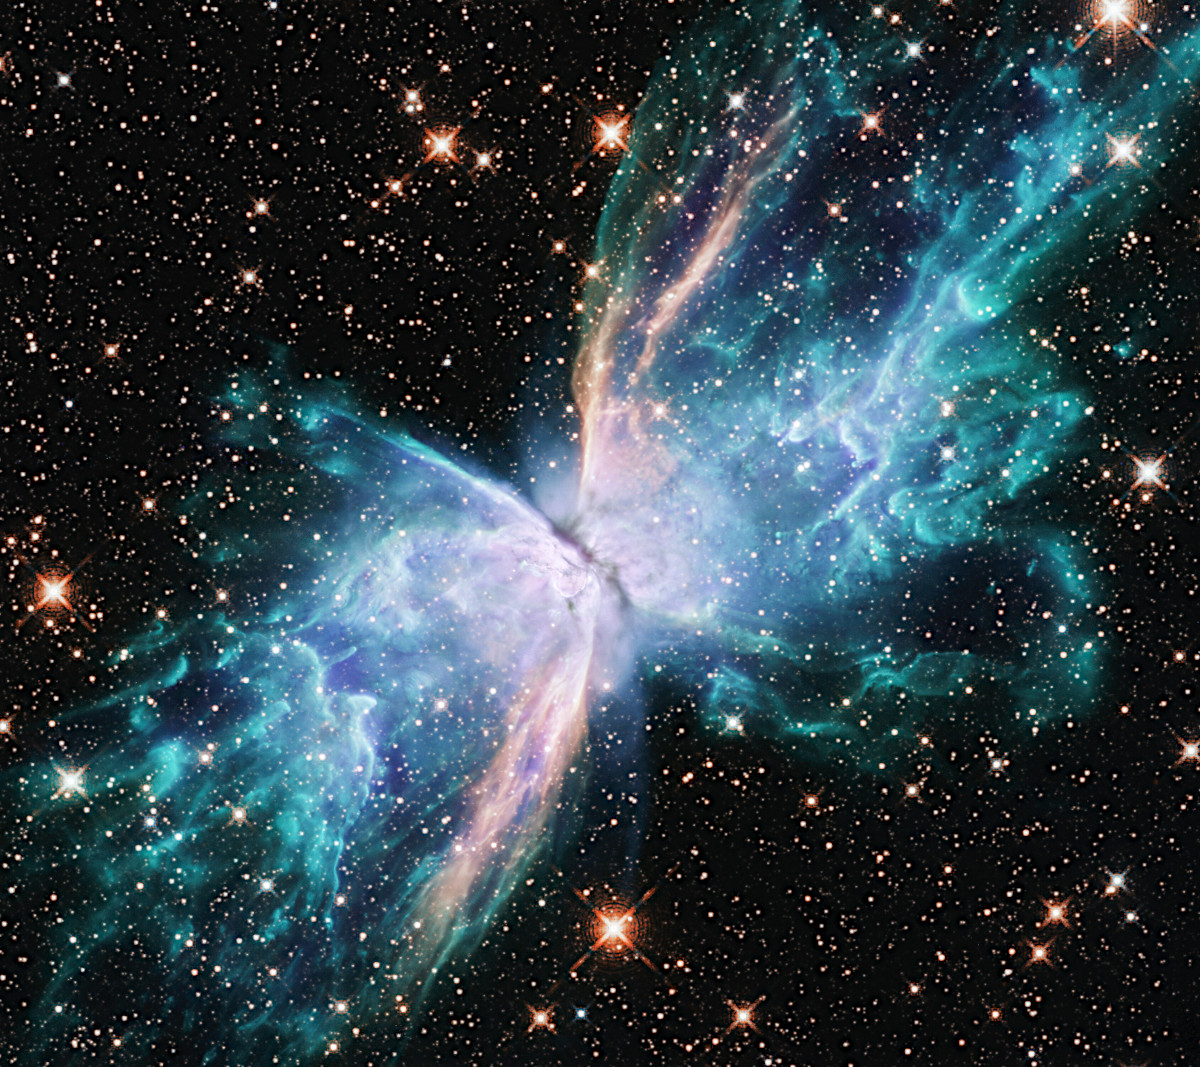 がか座の渦巻銀河ngc 1803 ハッブル宇宙望遠鏡の今週の1枚 アストロピクス